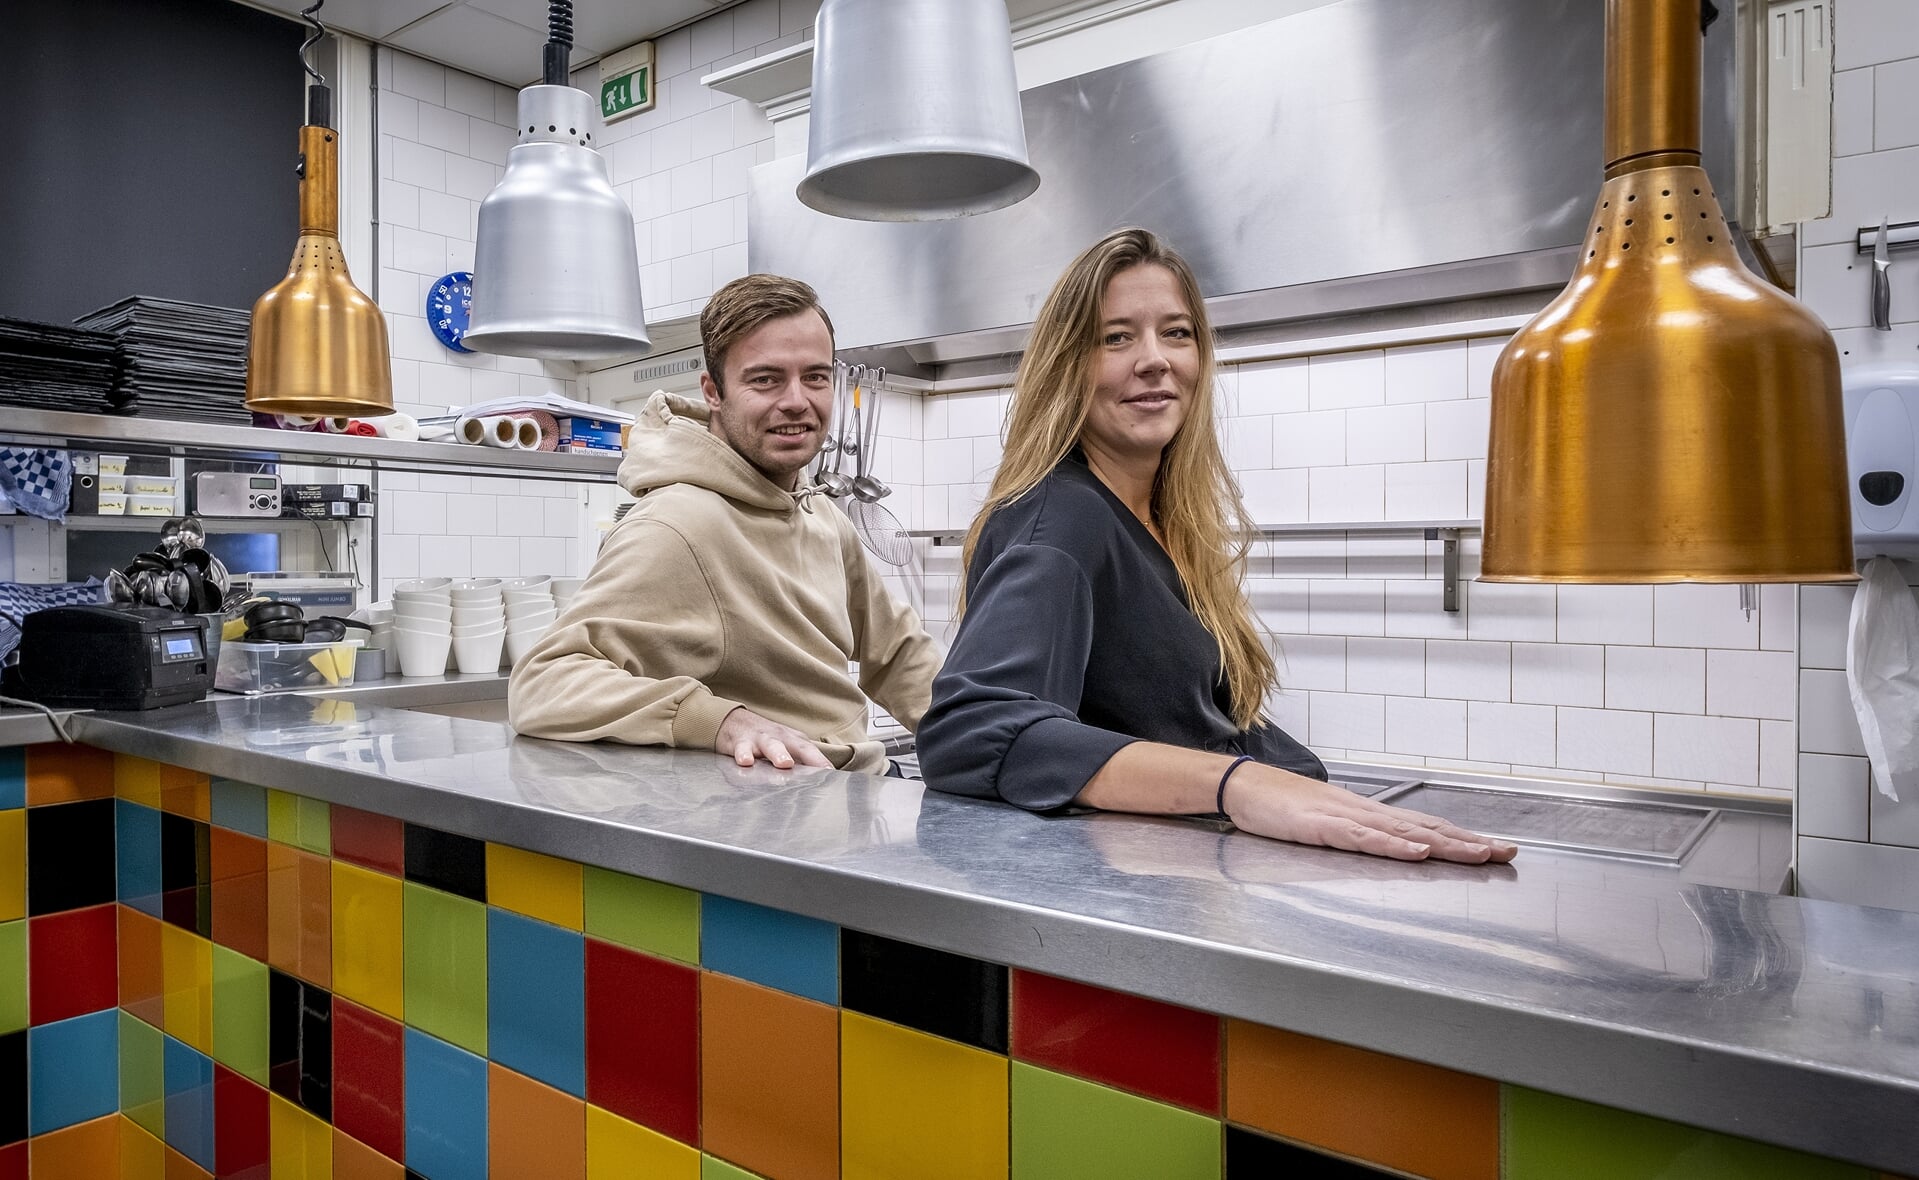 Souschefs Suzan van der Steen en Rik Mimpen verruilen hun werkplek in restaurant De Rechter in Boxtel voor de keuken van zorgcentrum Sint-Joris in Oirschot. Ze helpen een handje in de door corona overbelaste zorg.